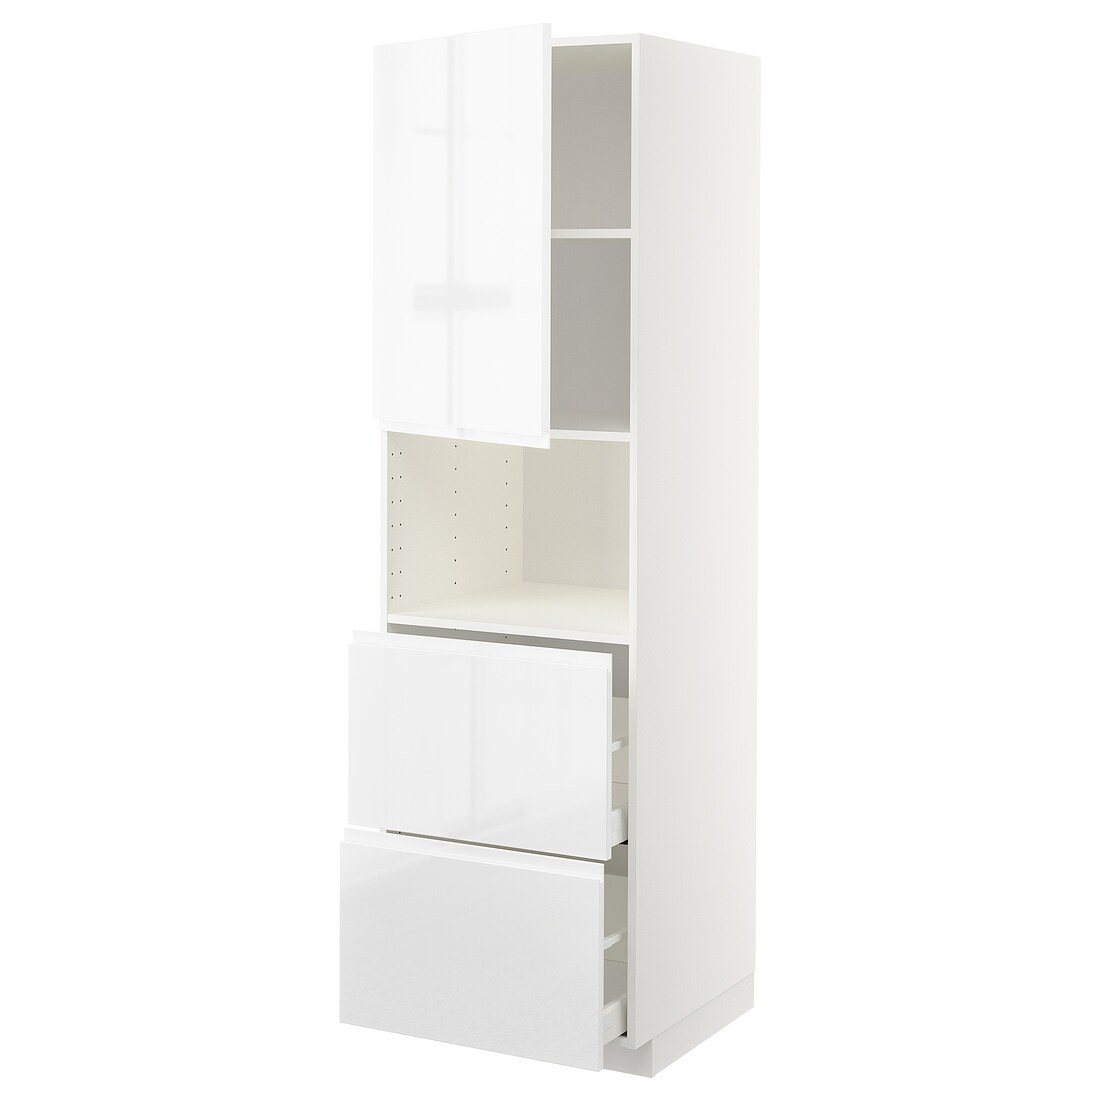 METOD МЕТОД / MAXIMERA МАКСИМЕРА Высокий шкаф для микроволновки с дверями / 2 ящика, белый / Voxtorp глянцевый / белый, 60x60x200 см